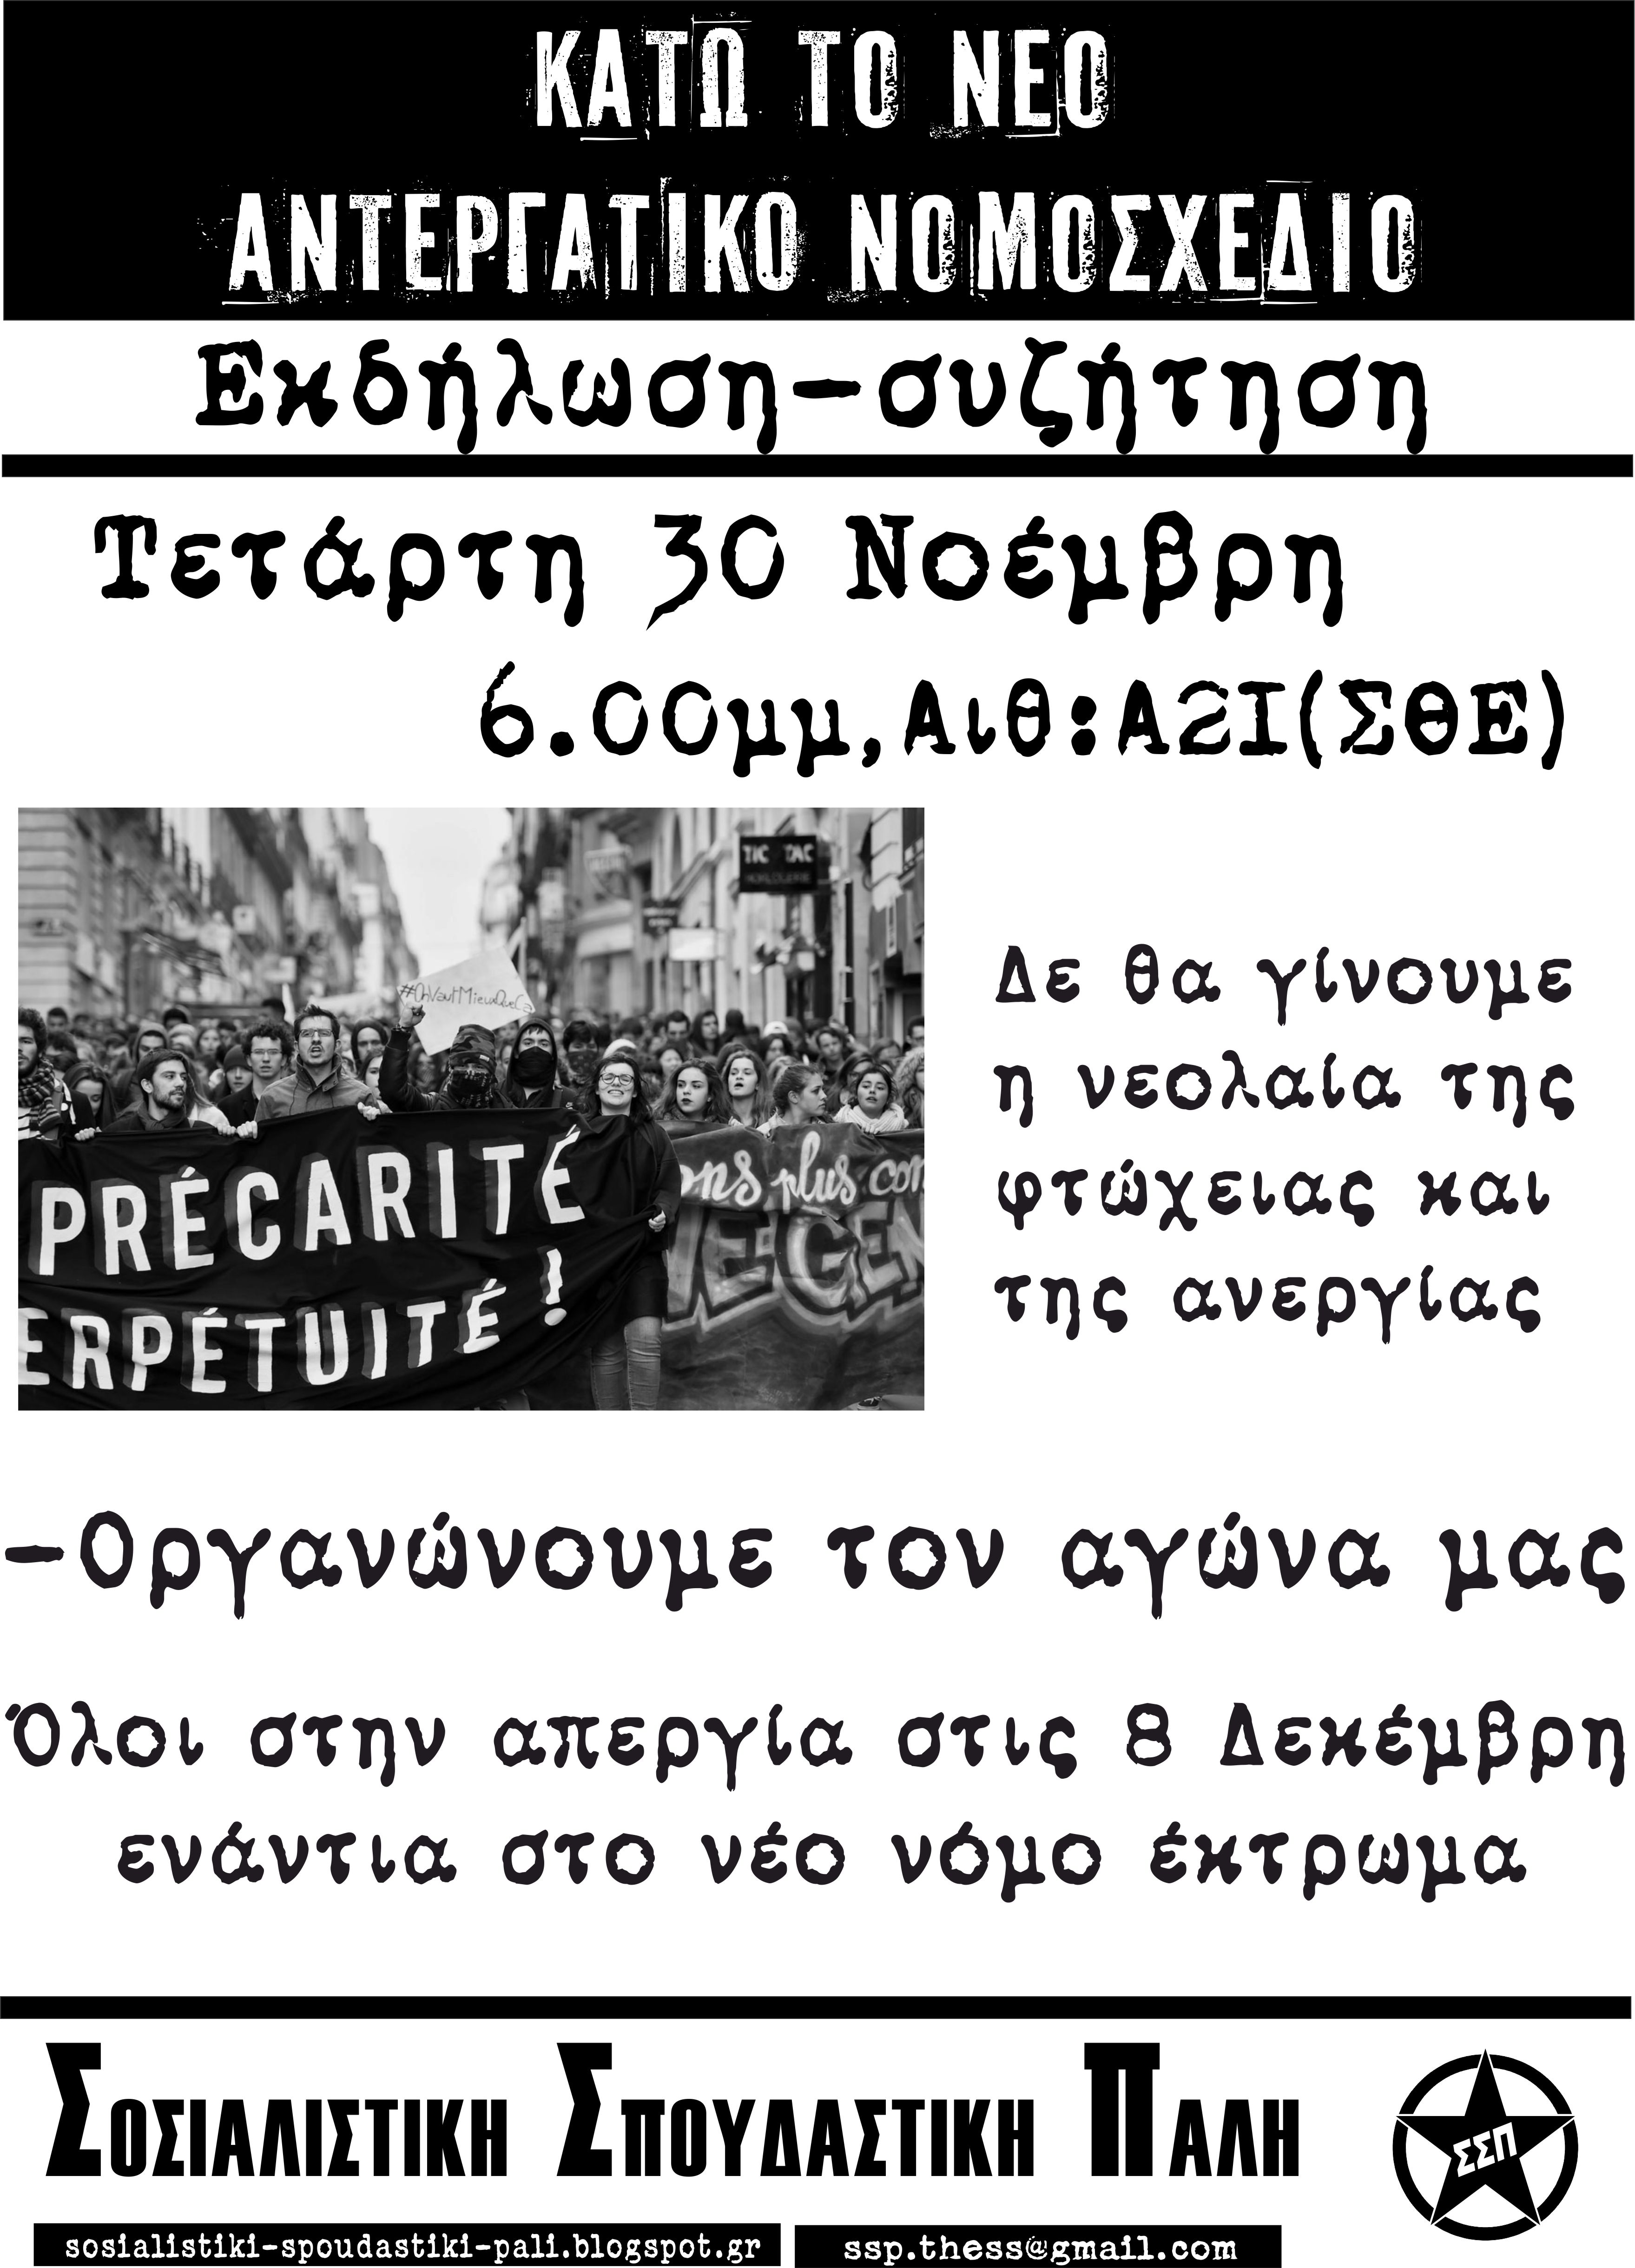 Θεσσαλονίκη: Εκδήλωση της ΣΣΠ για τα νέα αντεργατικά μέτρα. Τετάρτη 30/11